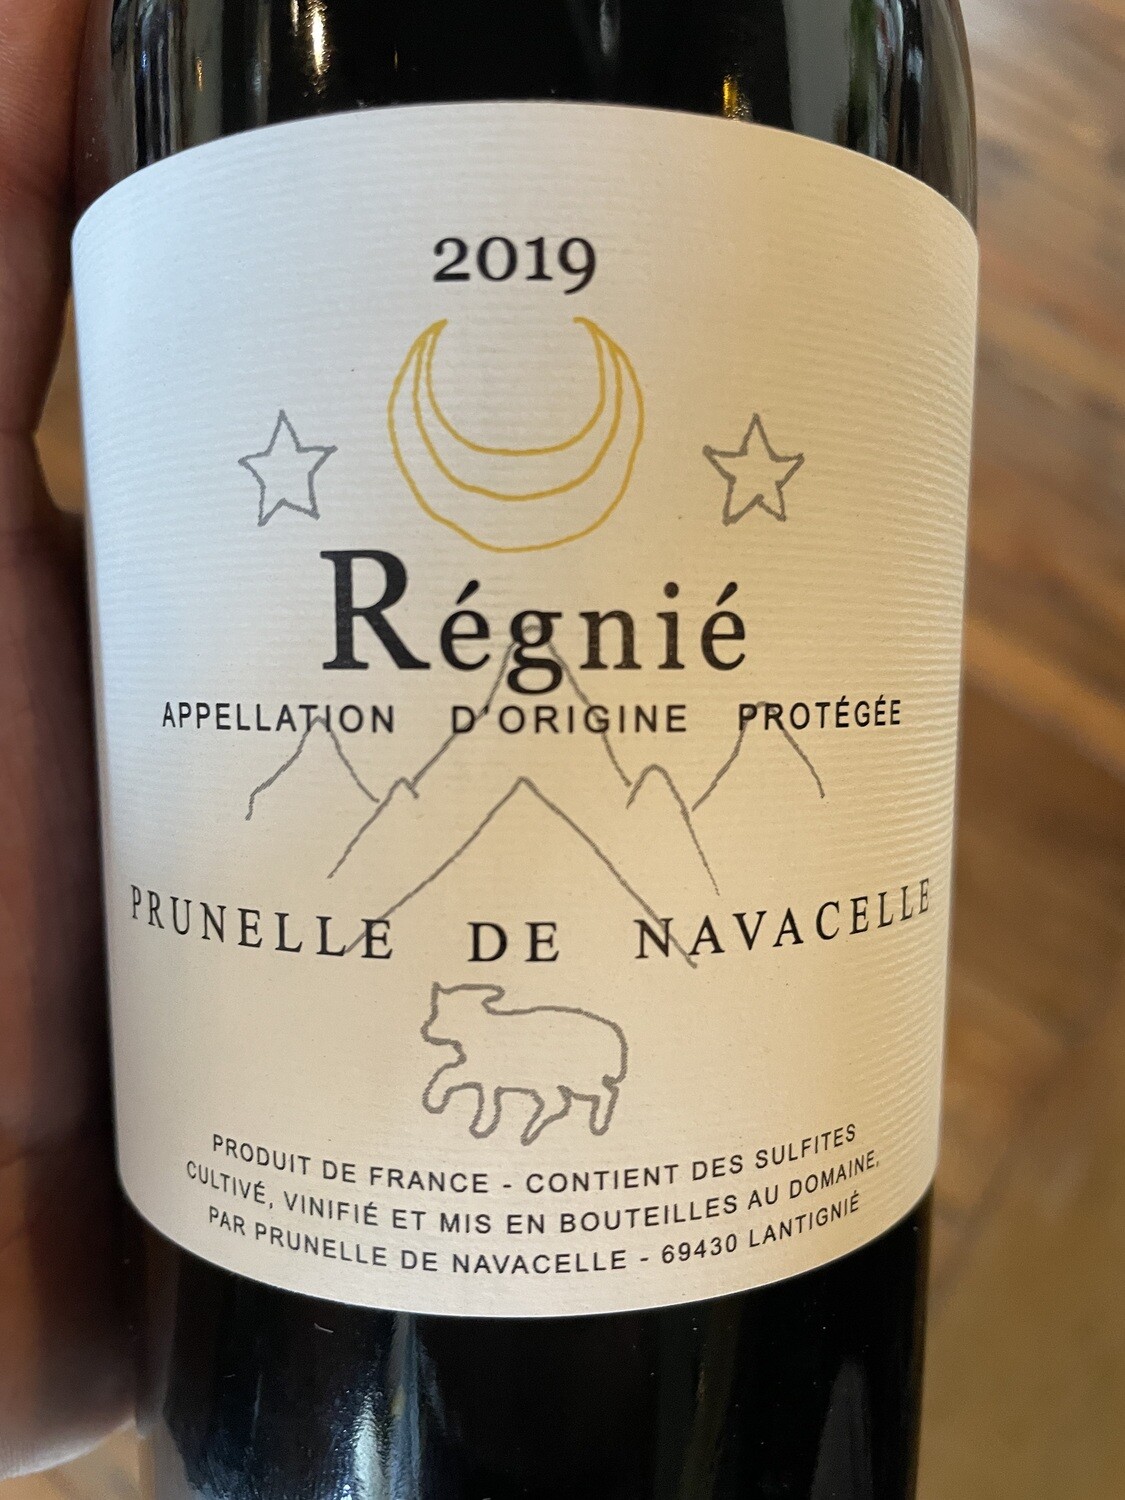 Prunelle de Navacelle 2019 Regnie